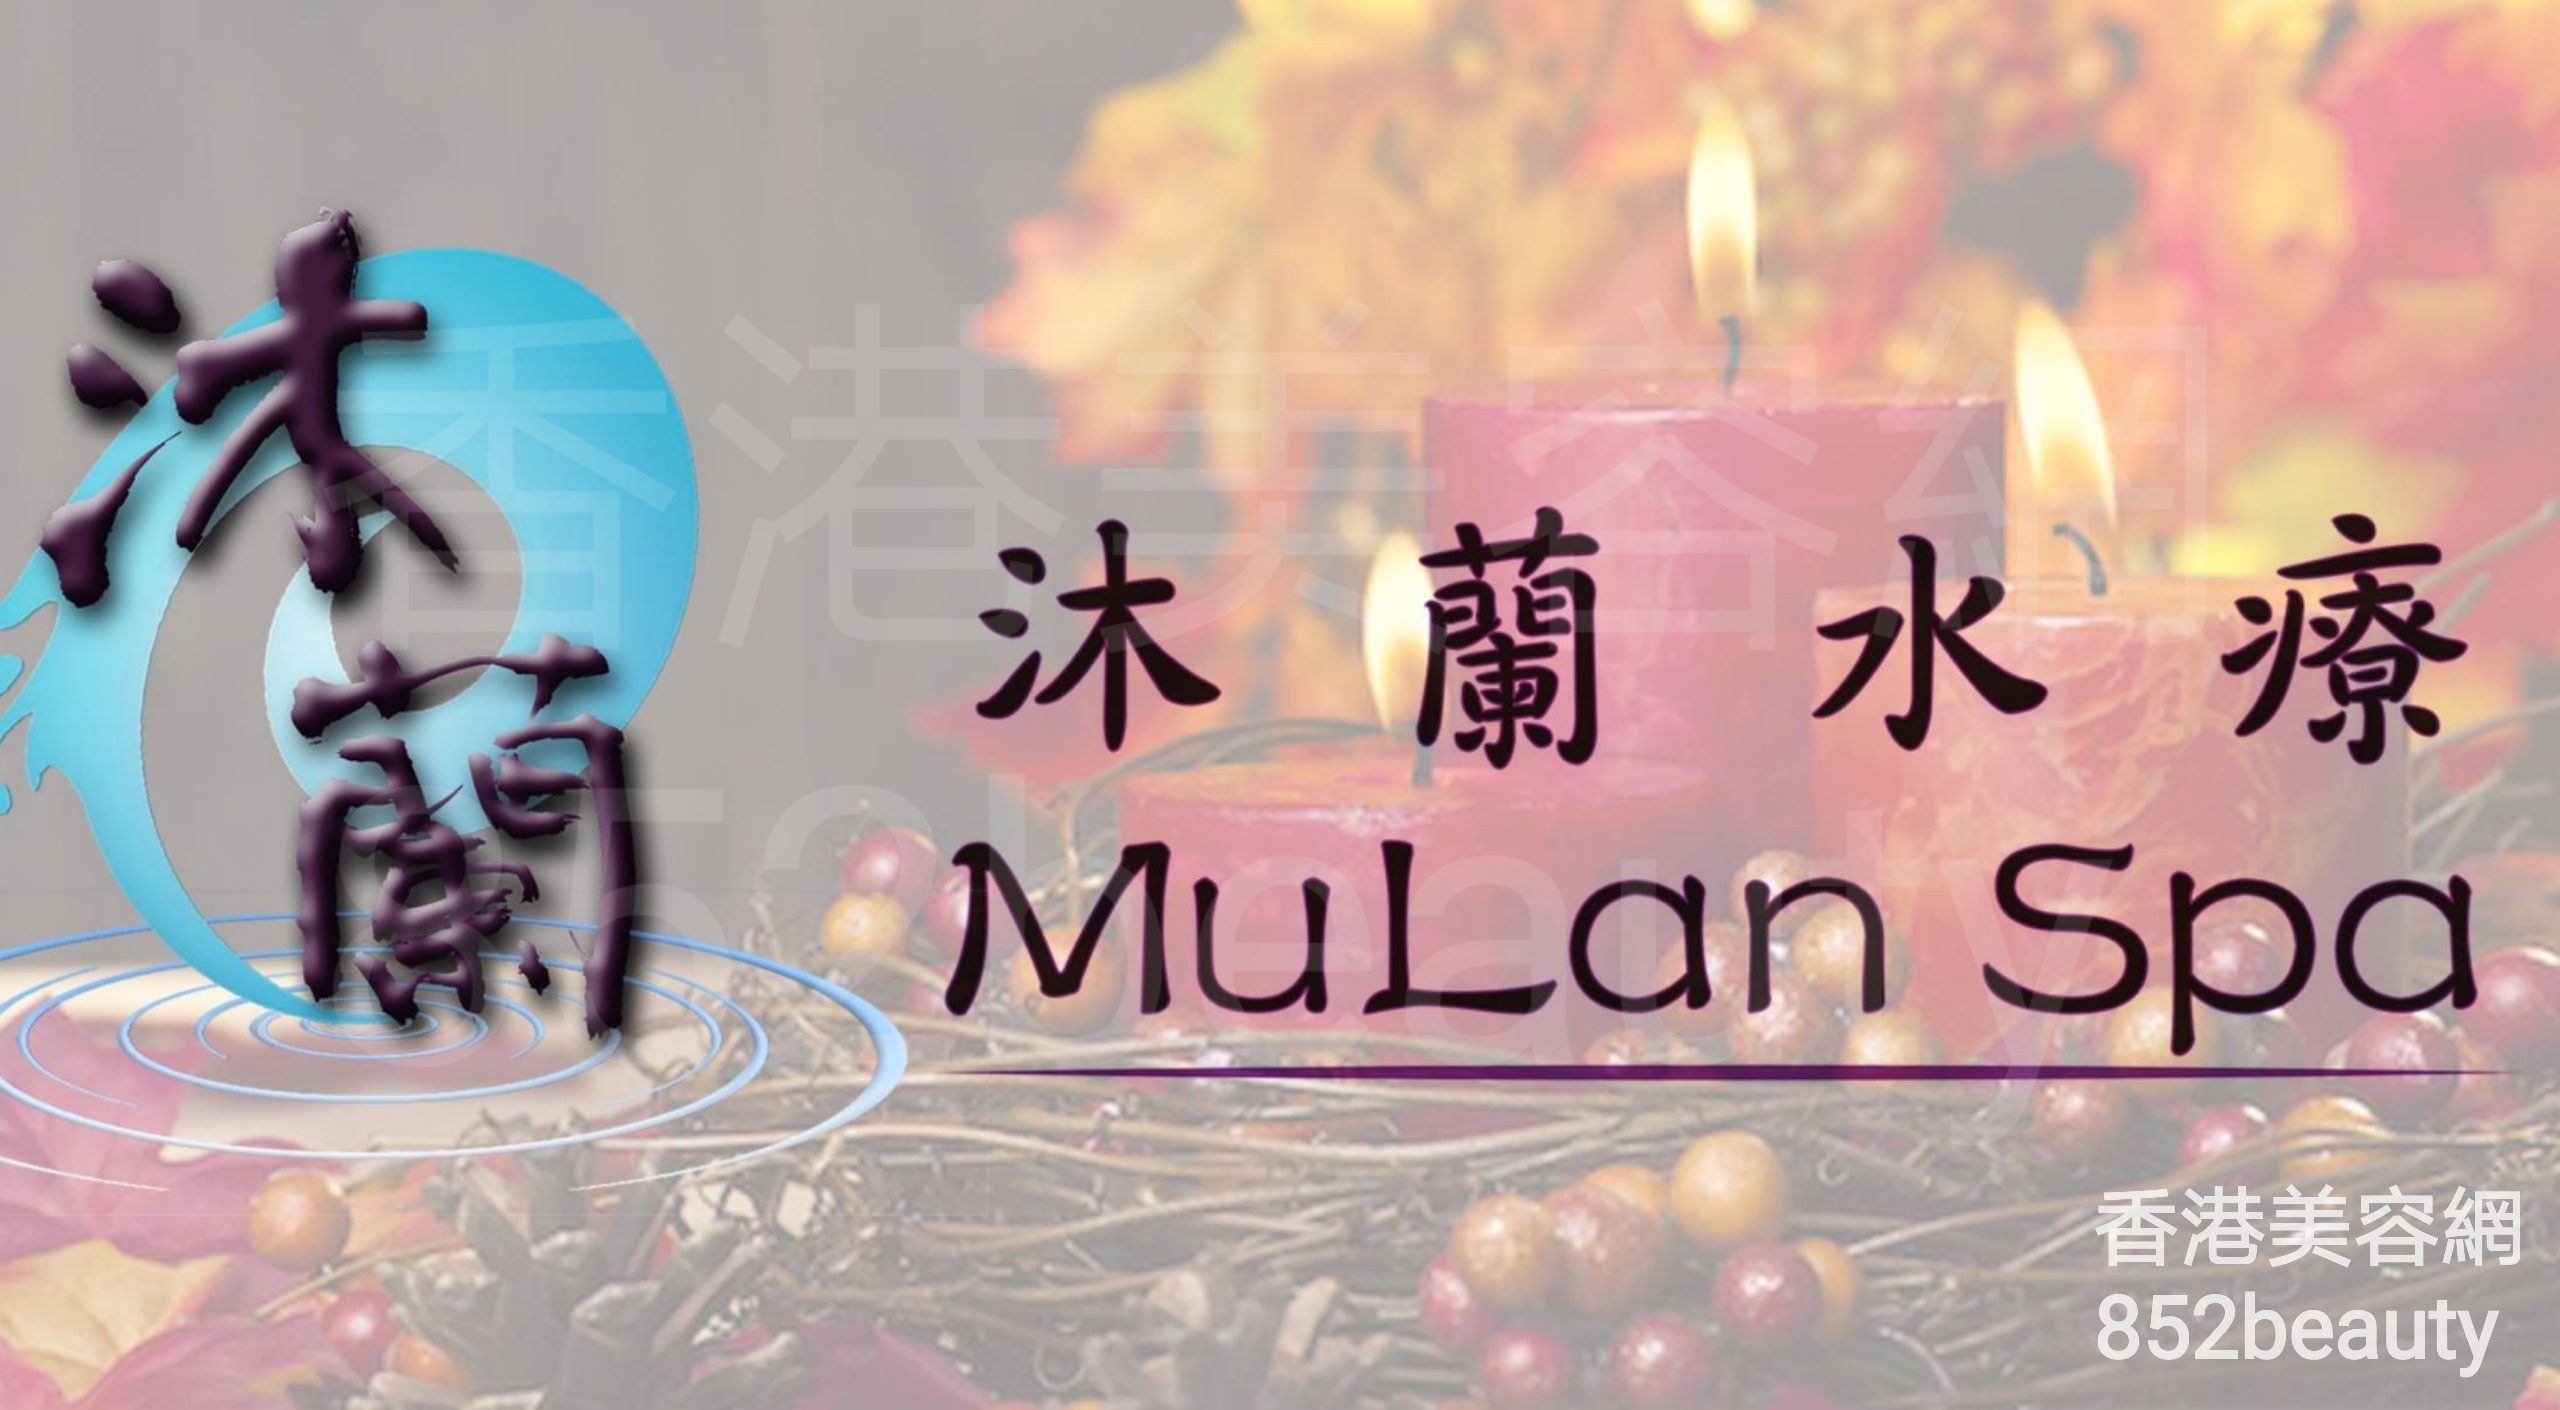 面部護理: 沐蘭水療 - MuLan Spa (灣仔分店)